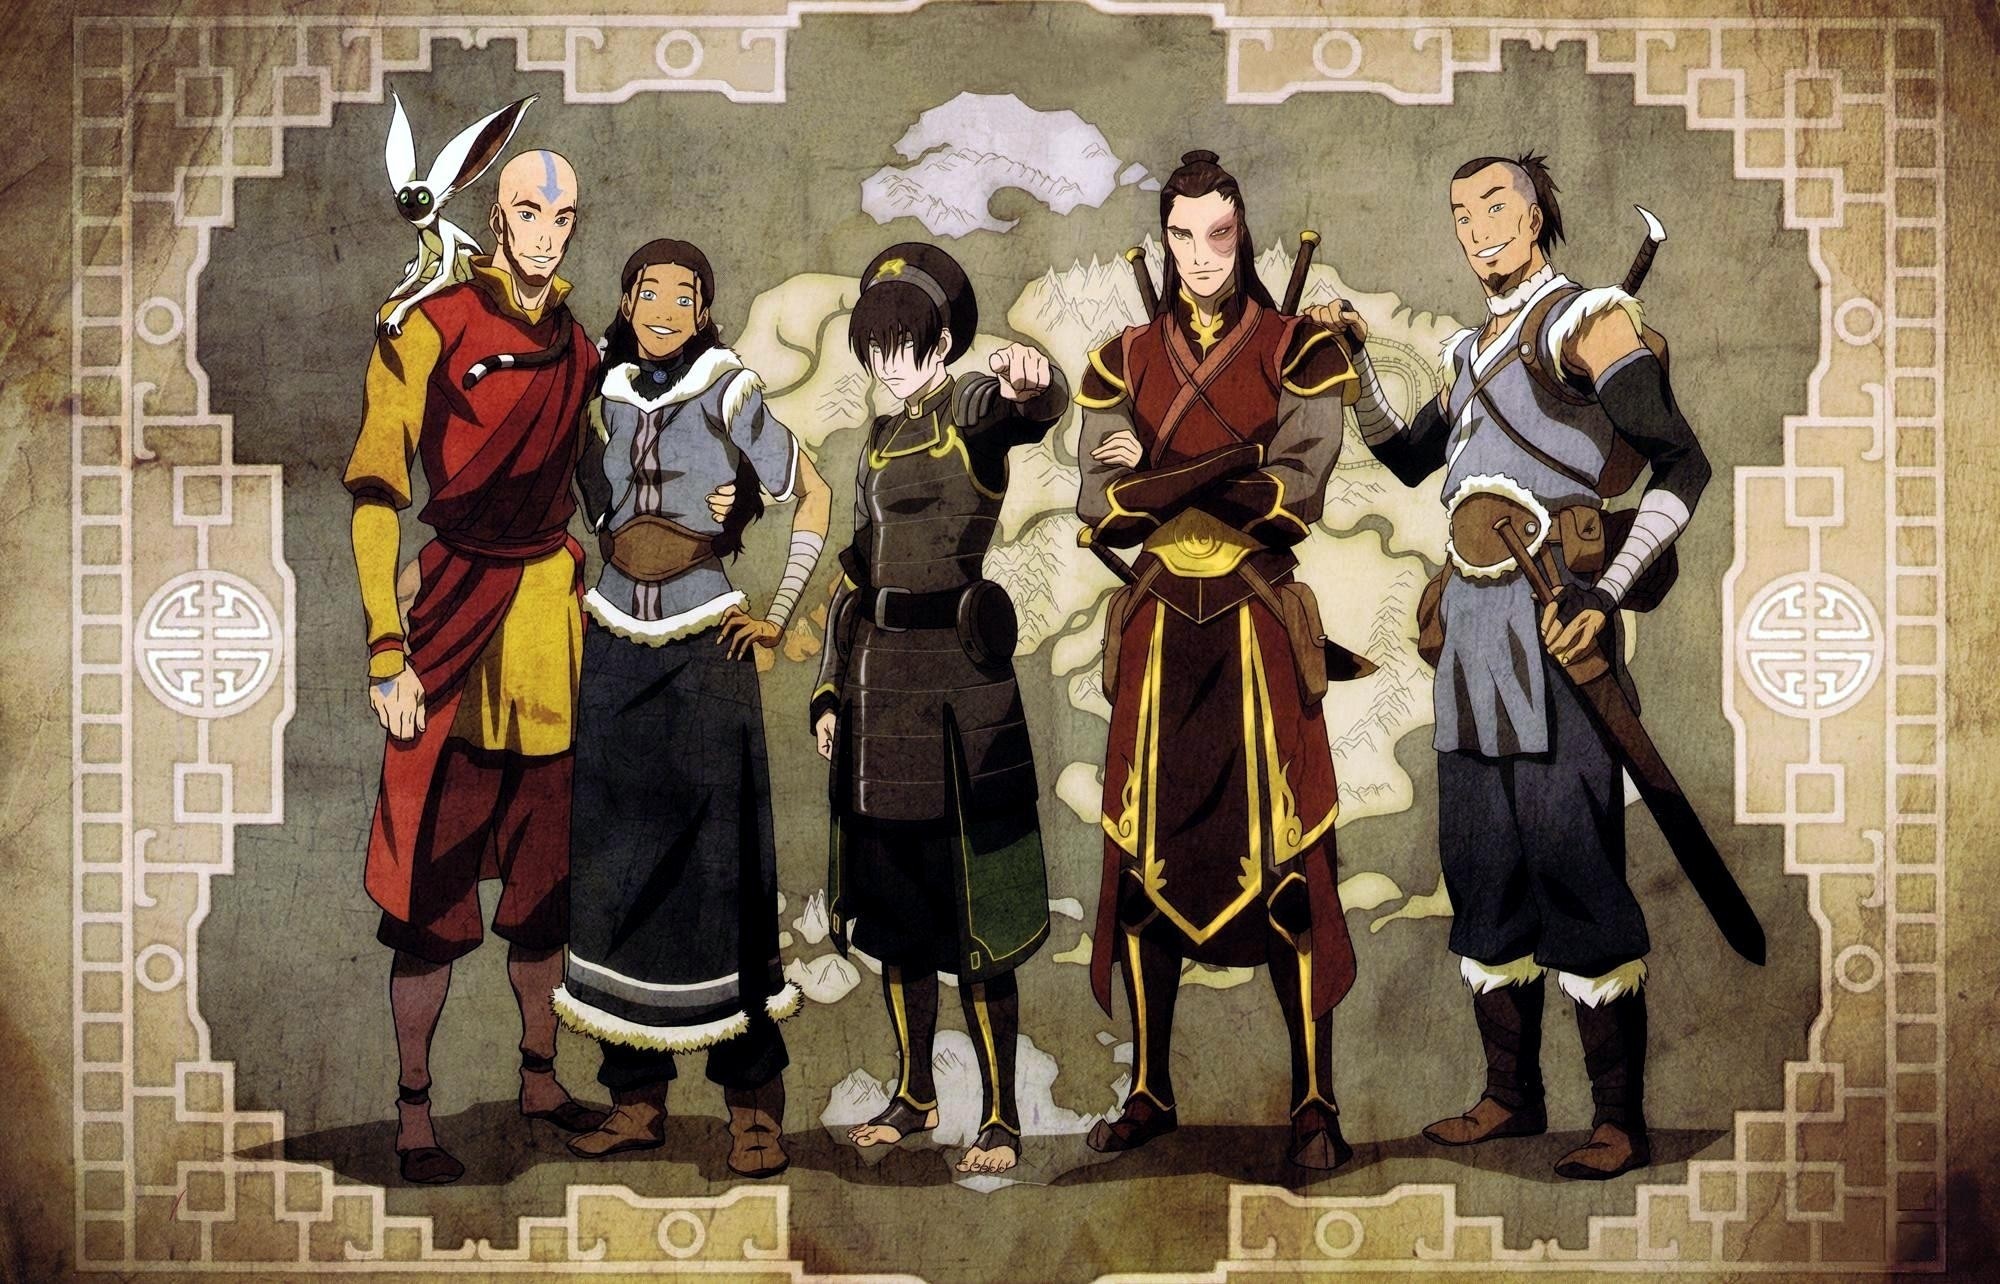 General 2000x1284 Aang Avatar: The Last Airbender Toph Beifong Prince Zuko Sokka anime digital art